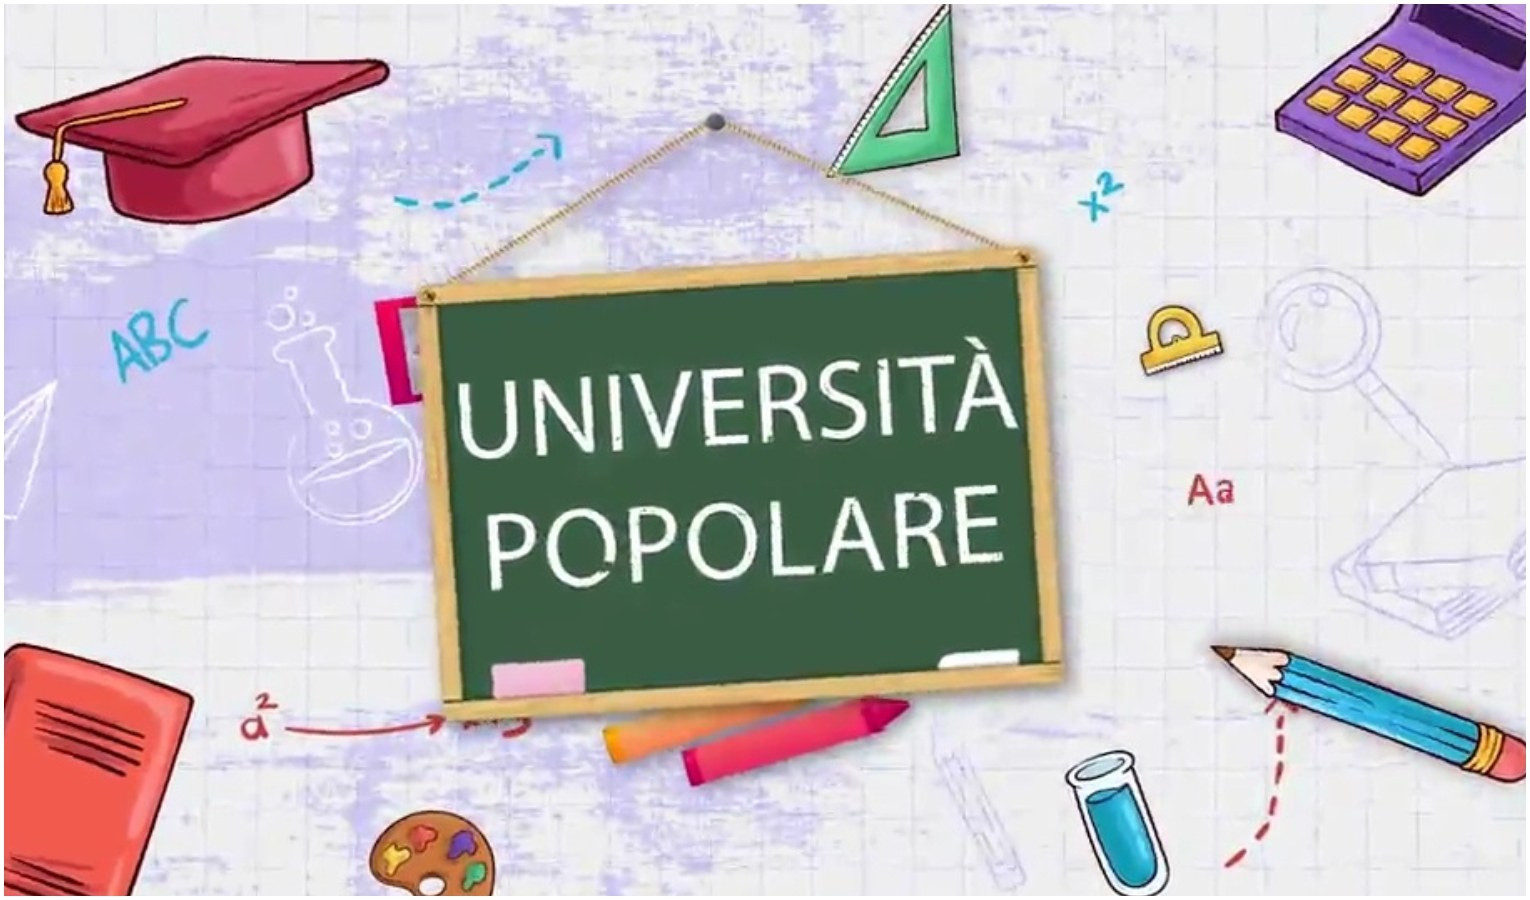 Università popolare - Lingua italiana: liquefando o liquefacendo?